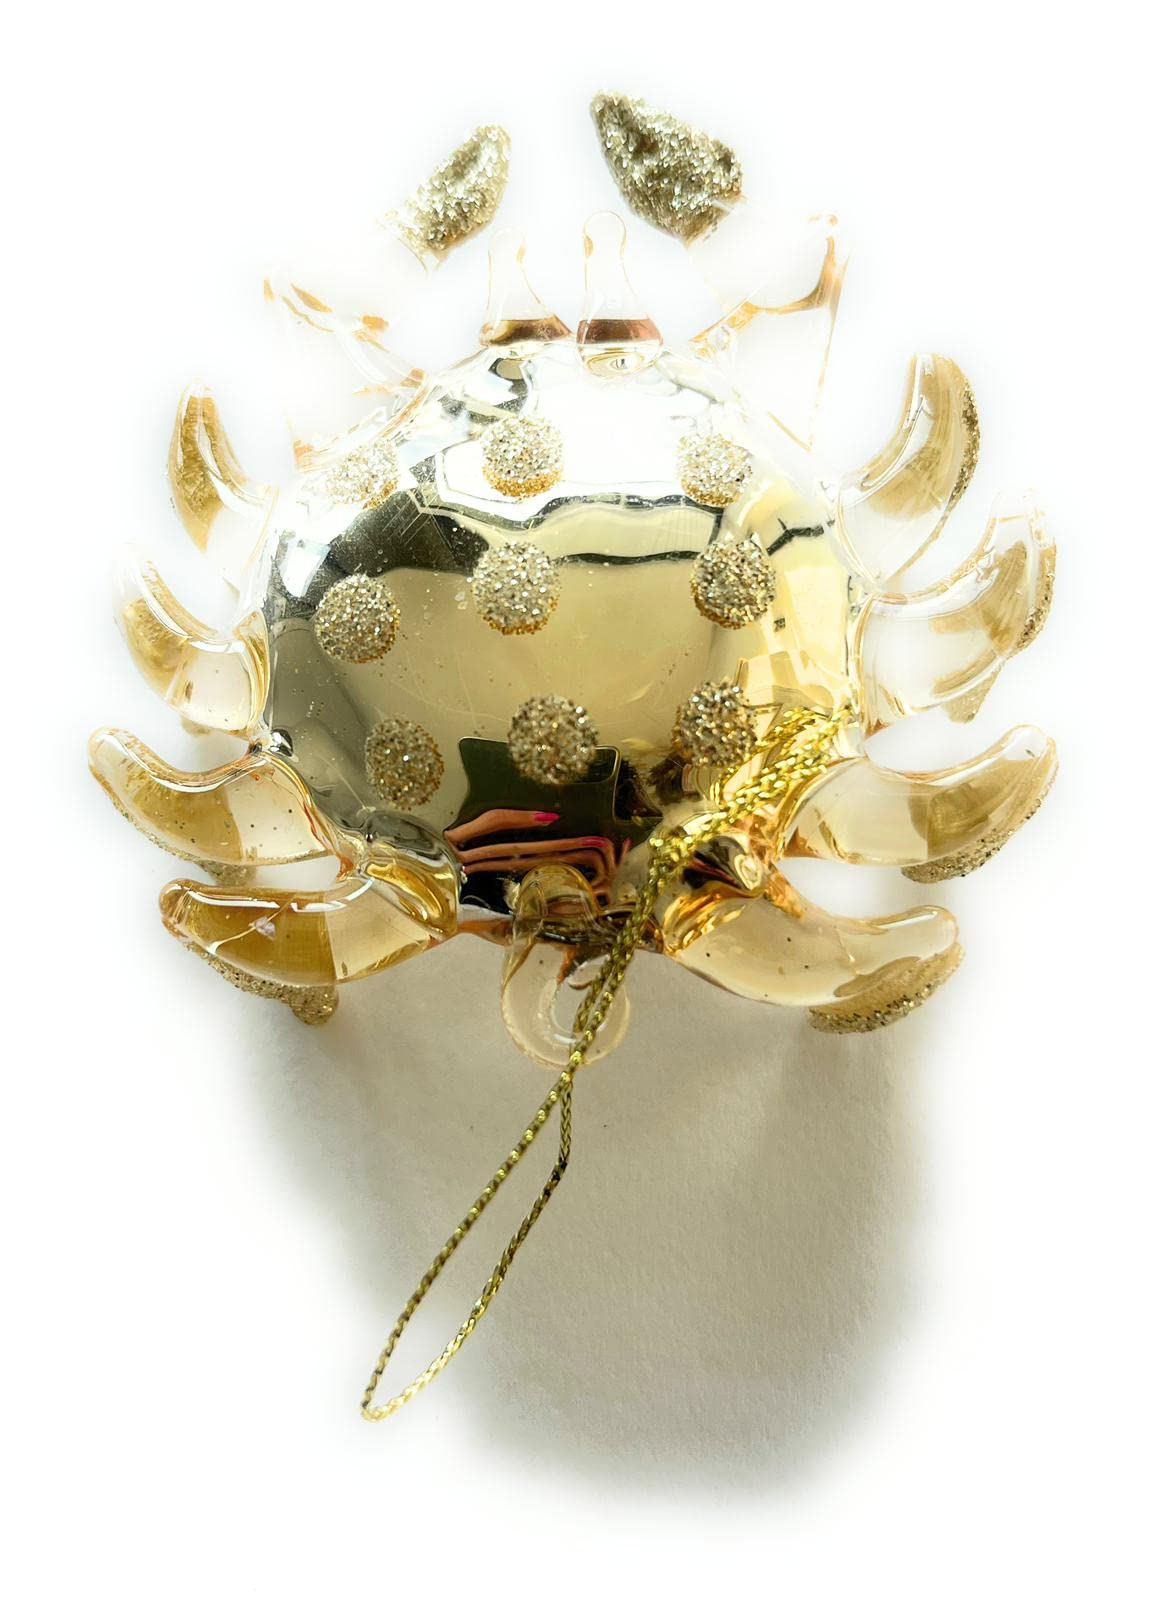 Confezione da 2 Granchietti - decorazioni di Natale 1 color oro e 1 color madreperla